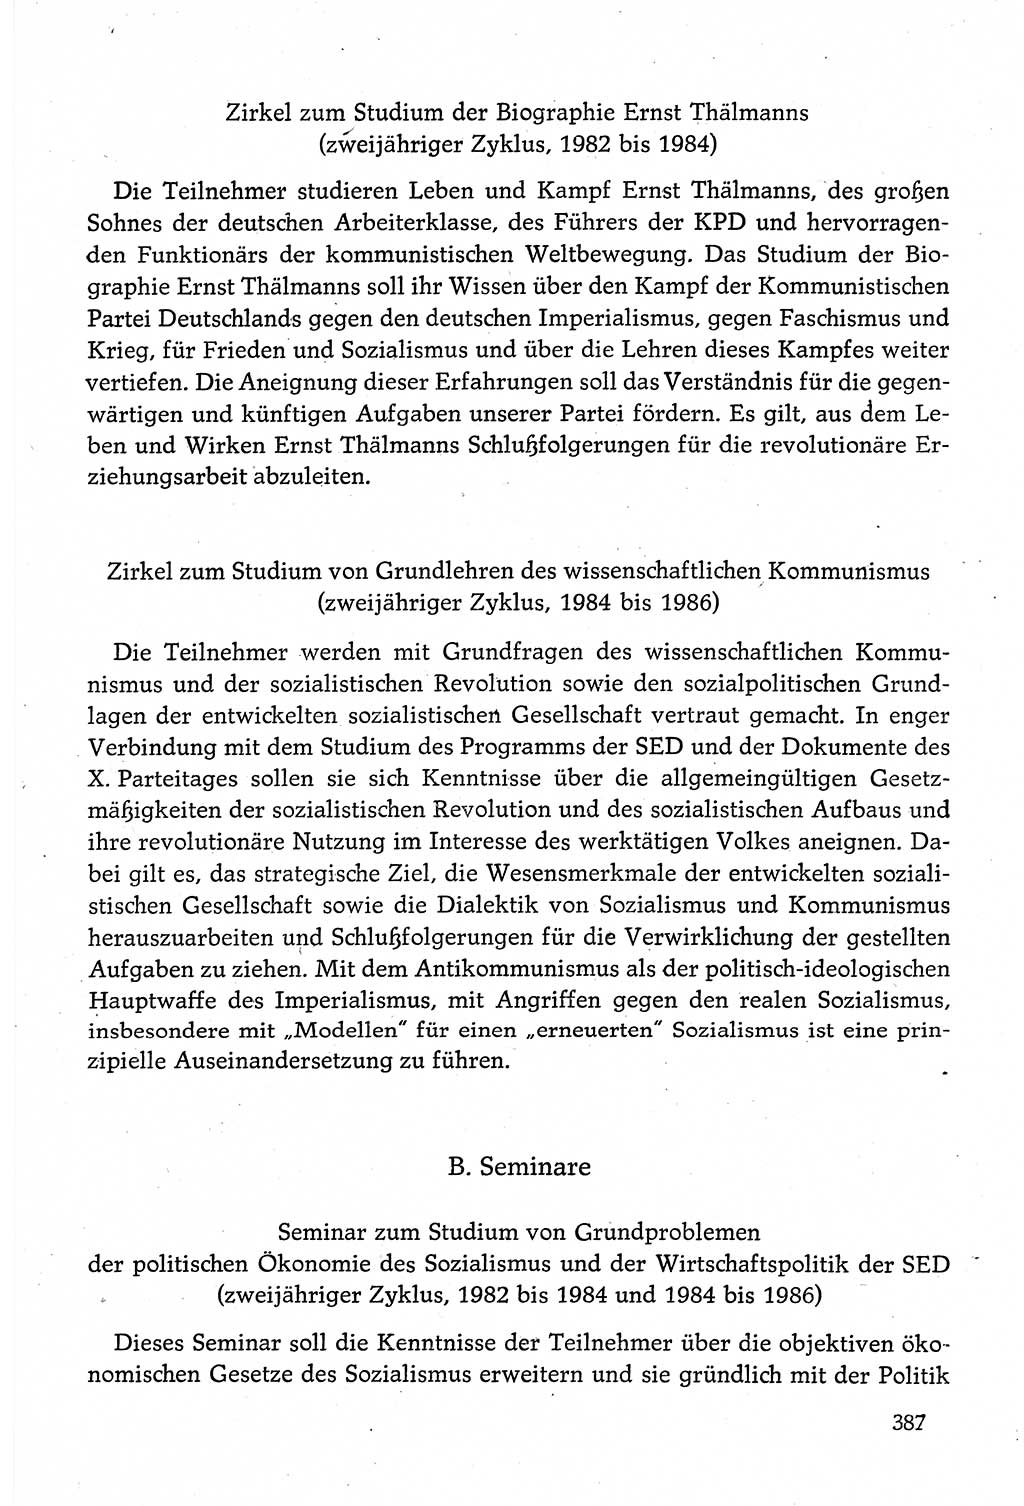 Dokumente der Sozialistischen Einheitspartei Deutschlands (SED) [Deutsche Demokratische Republik (DDR)] 1980-1981, Seite 387 (Dok. SED DDR 1980-1981, S. 387)